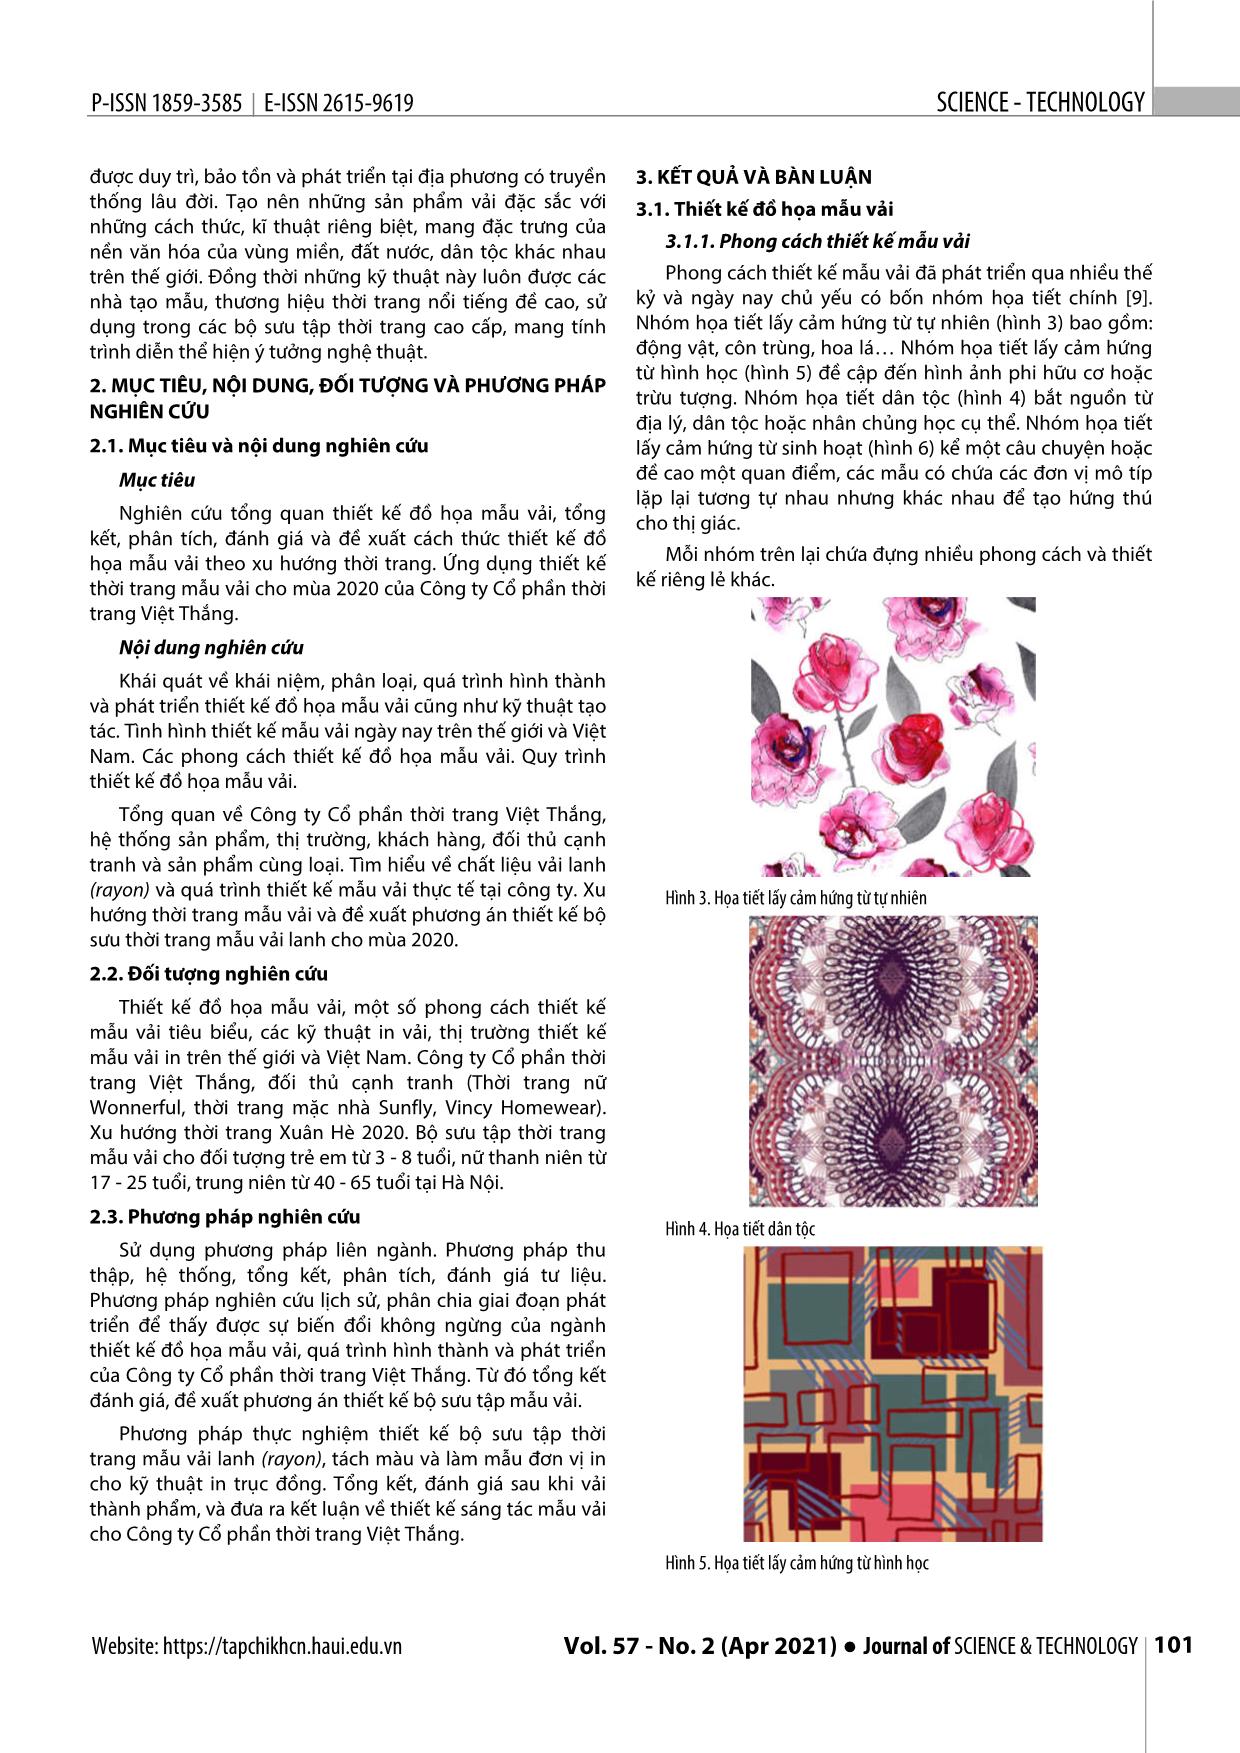 Nghiên cứu thiết kế đồ họa mẫu vải và ứng dụng thiết kế bộ sưu tập thời trang mẫu vải trang 4